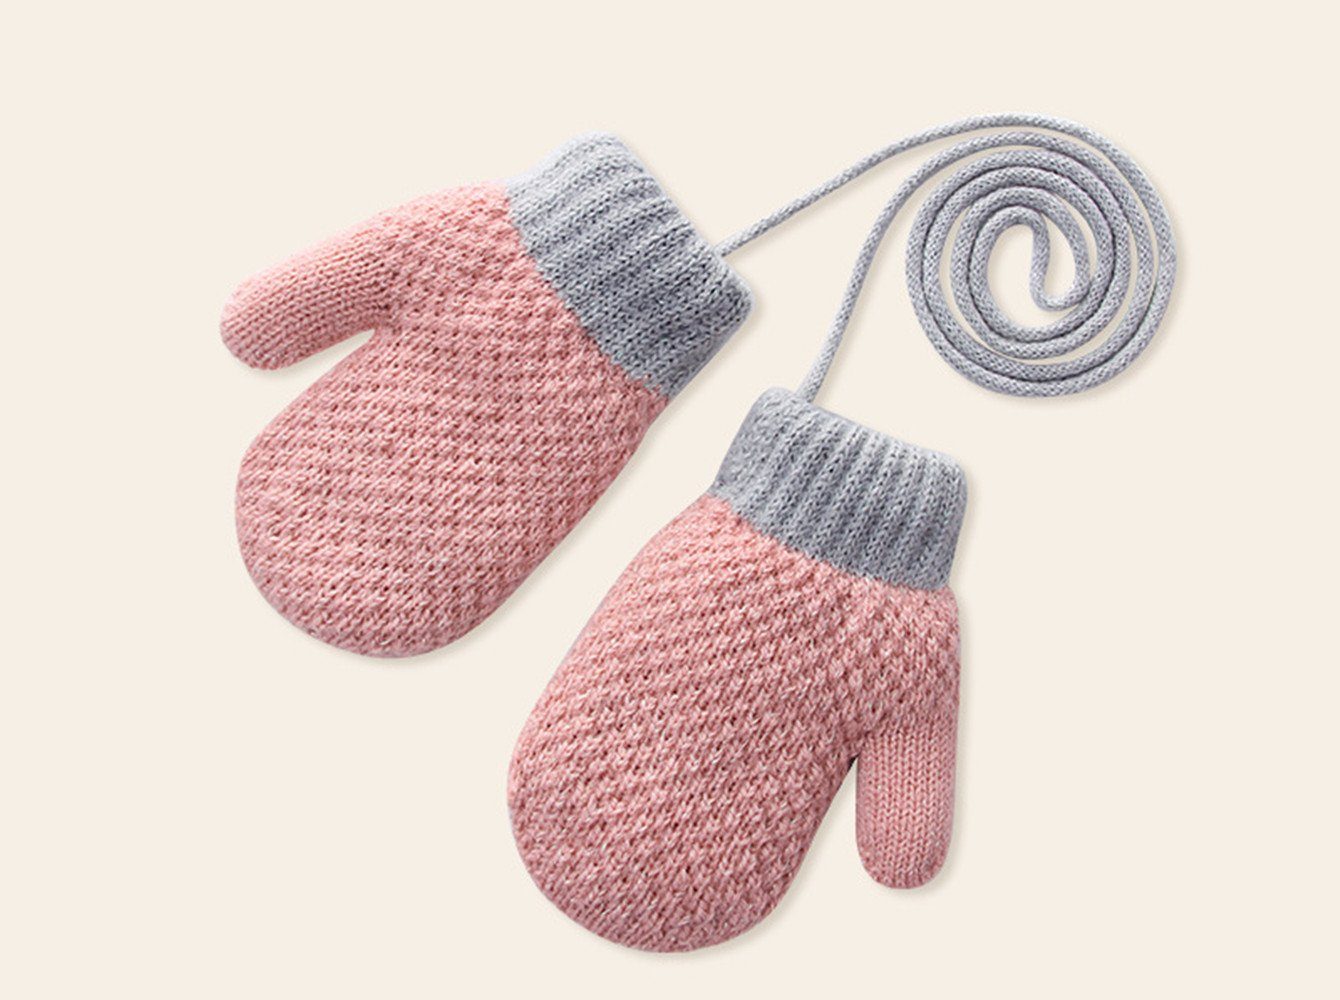 XDeer Fäustlinge Baby Handschuhe, Fäustlinge Kinder Winterhandschuhe Warm Strickhandschuhe mit Schlüsselband für 1-3 Jahre Mädchen Junge